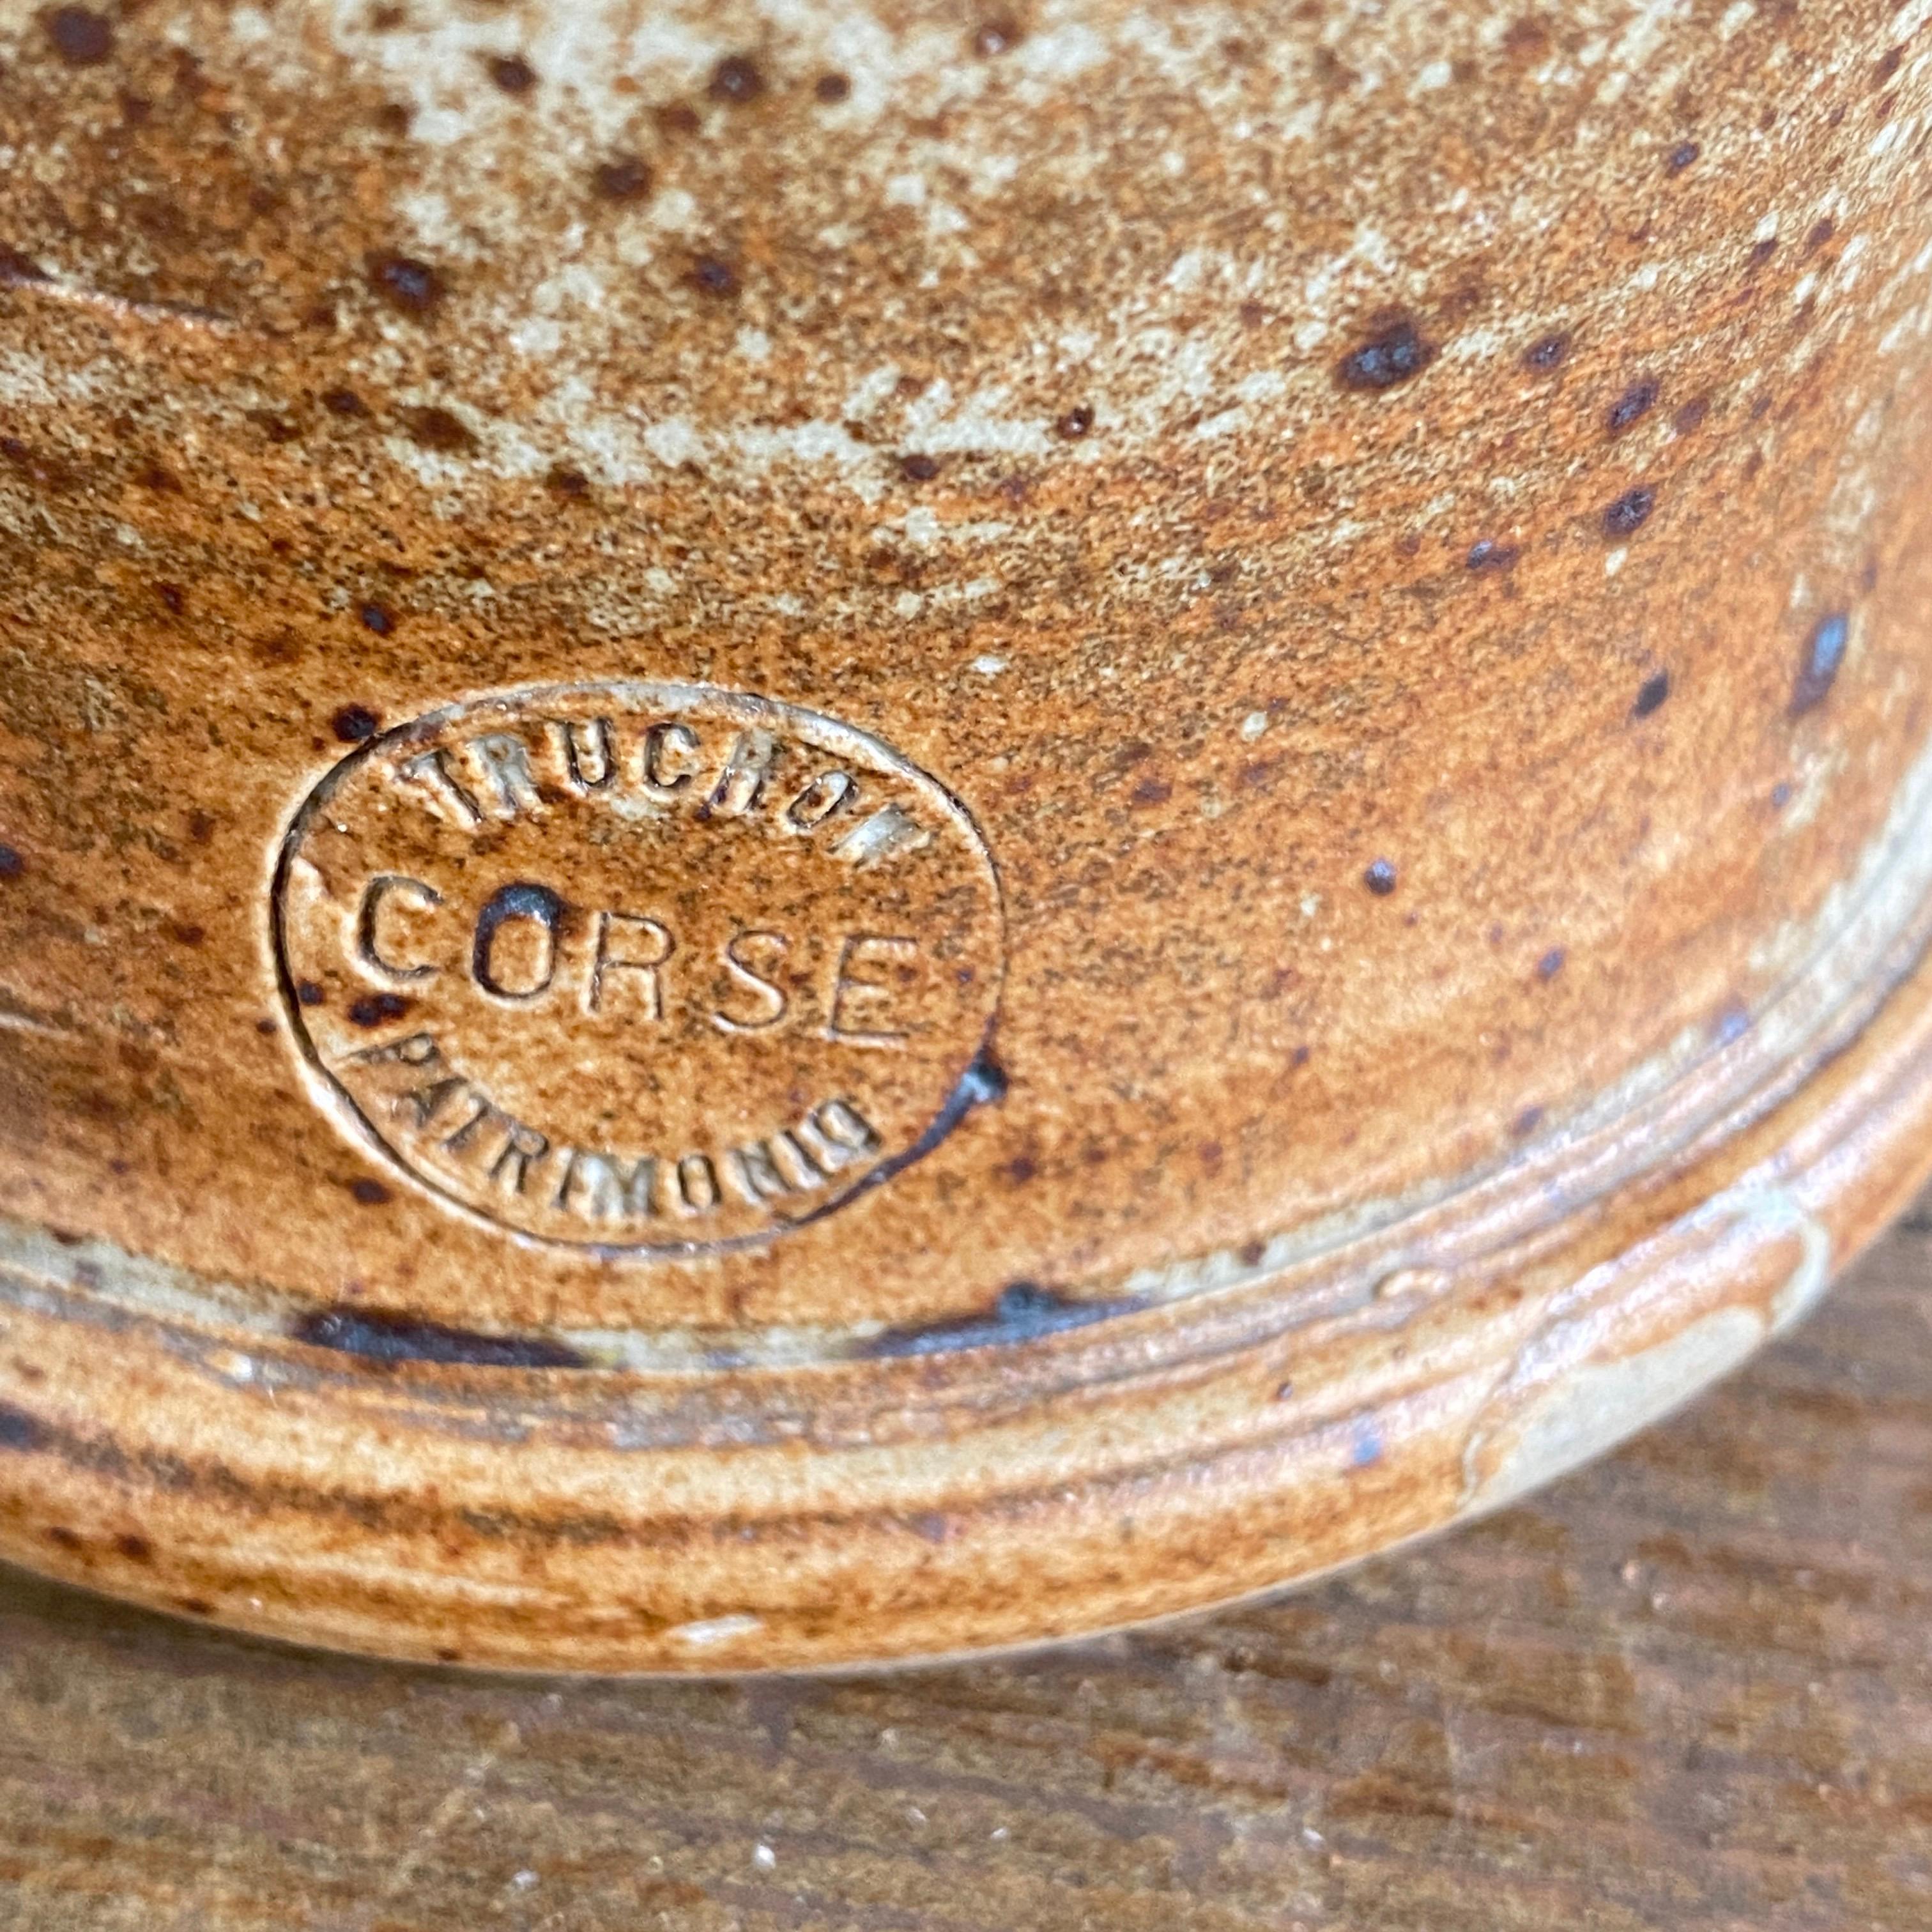 Ce pichet, ou cruche, vient de France. Dans le style du provençal français, il est en excellent état. On peut voir sa vieille patine, dans une couleur grise et brune. Il a été fabriqué vers 1960. Il est en céramique grès.
Et il est signé.